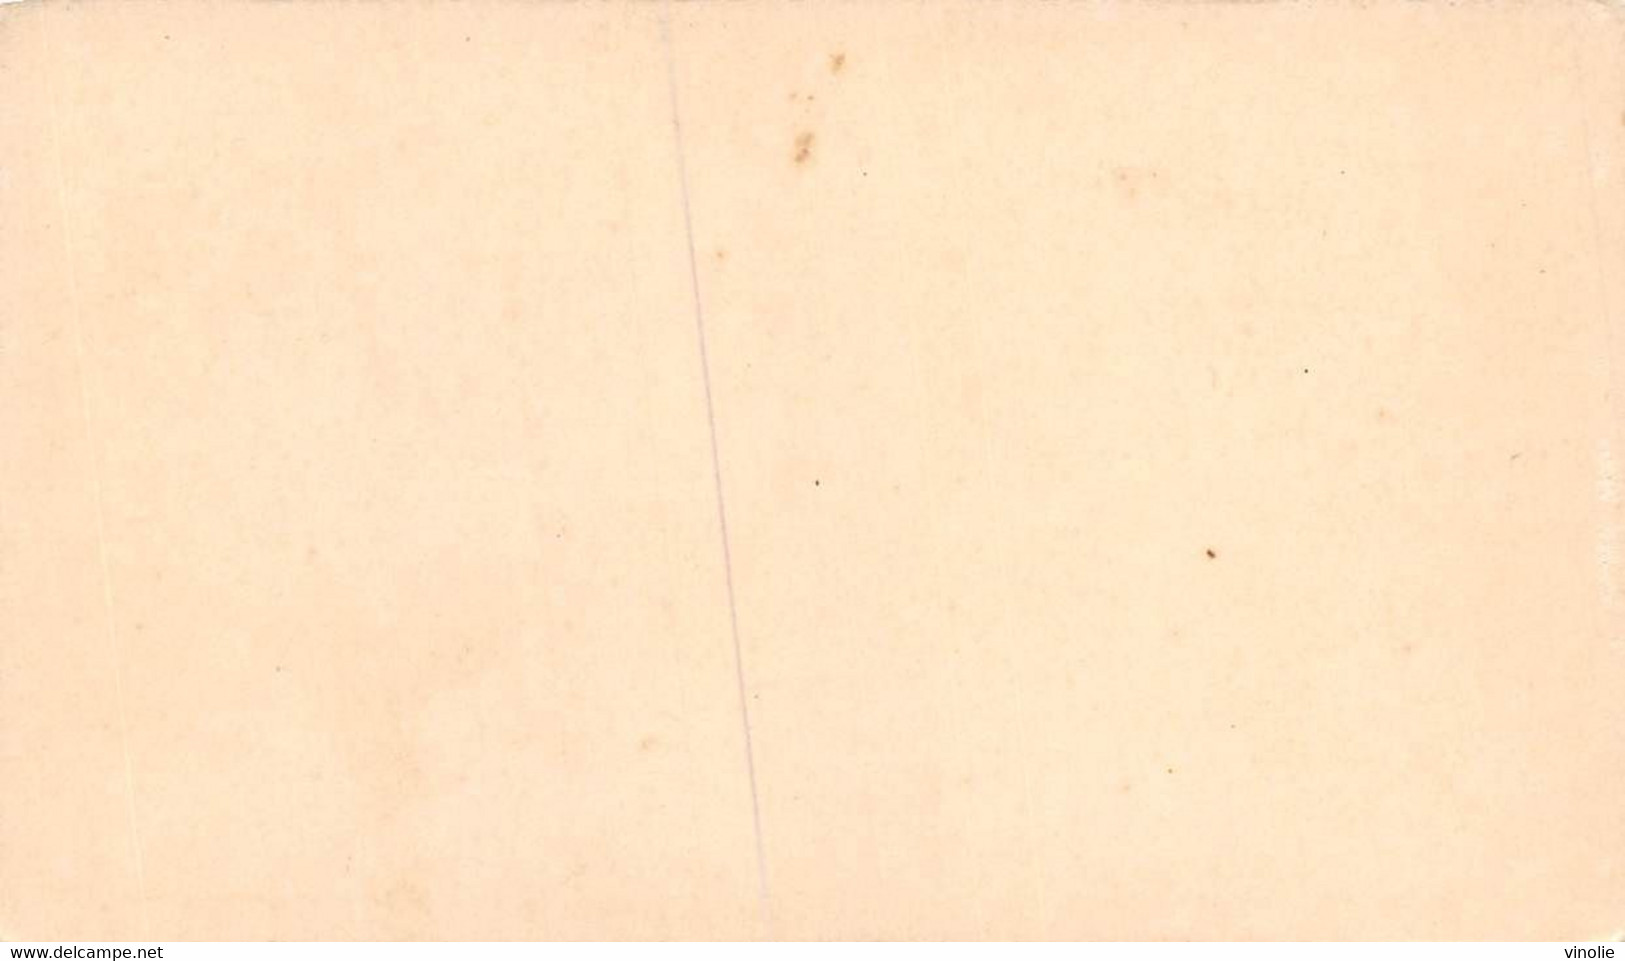 P.21-FO-1568 : IMAGE. CHROMOLITHOGRAPHIE. THEME MONNAIE. PIECE DE 2 FRANCS ARGENT. 1898 - Unclassified